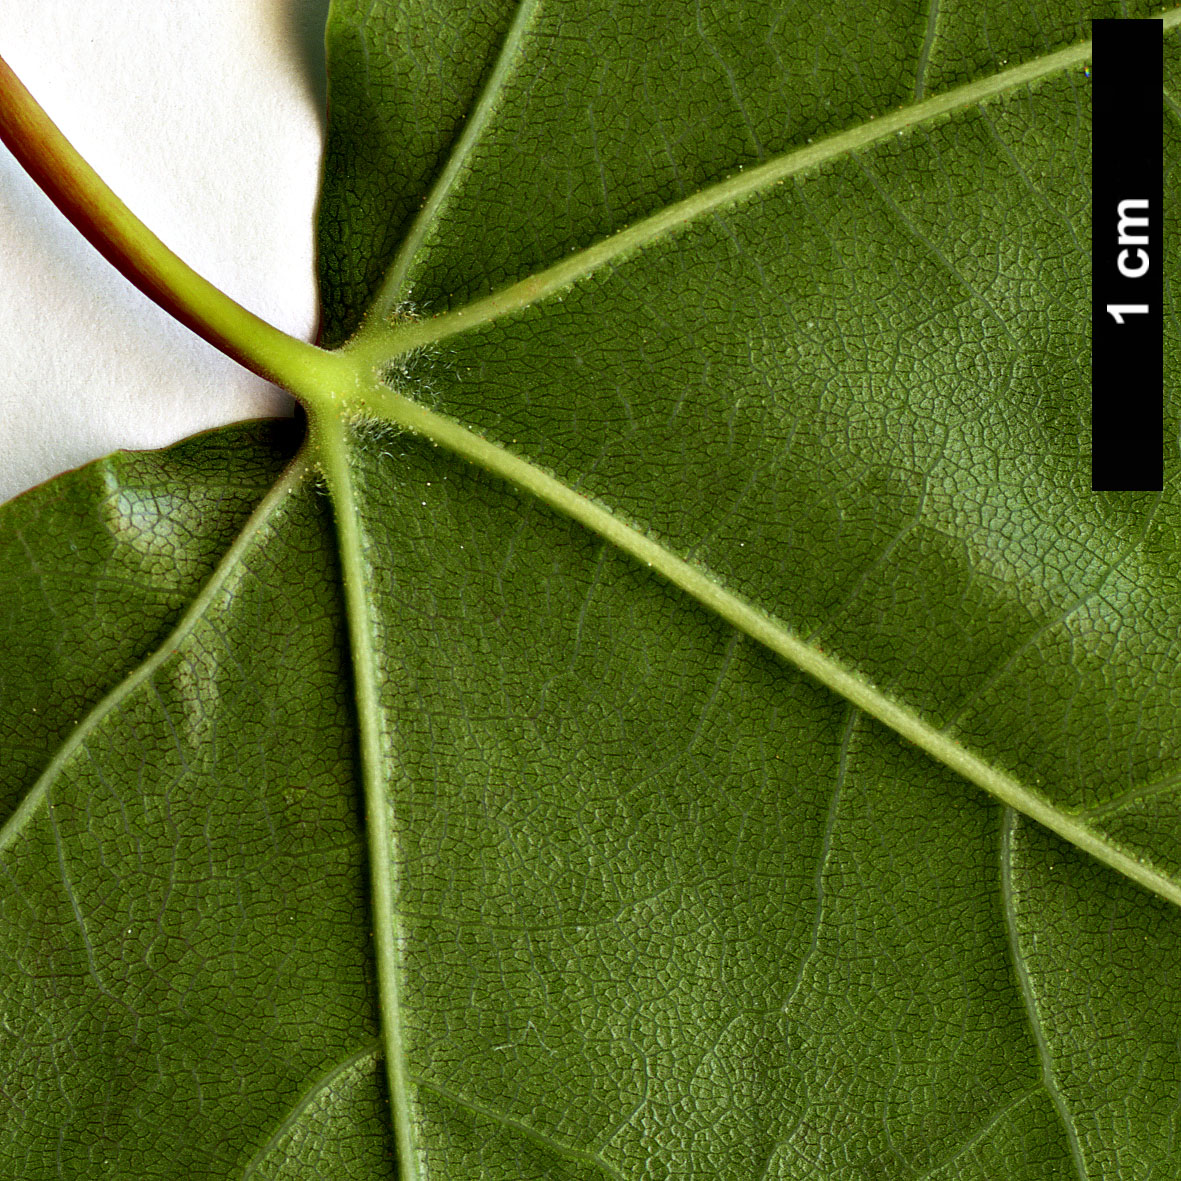 High resolution image: Family: Sapindaceae - Genus: Acer - Taxon: shenkanense 